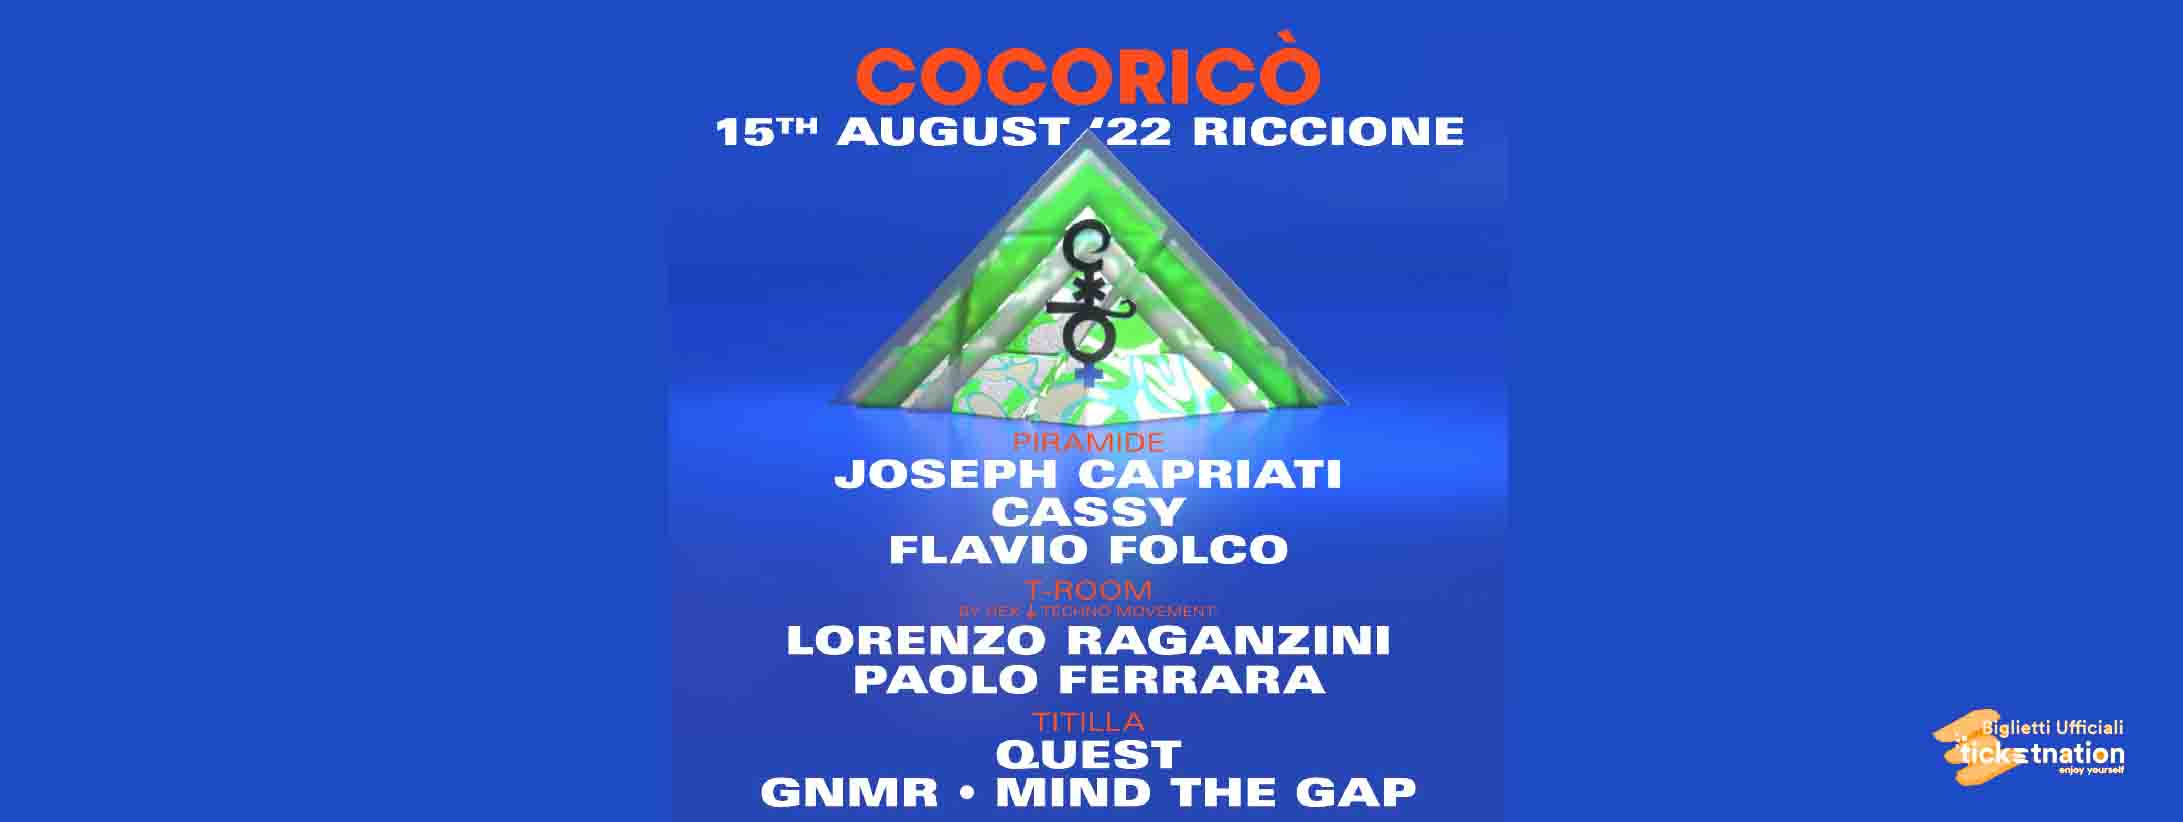 Joseph-capriati-cocorico-15-agosto-2022